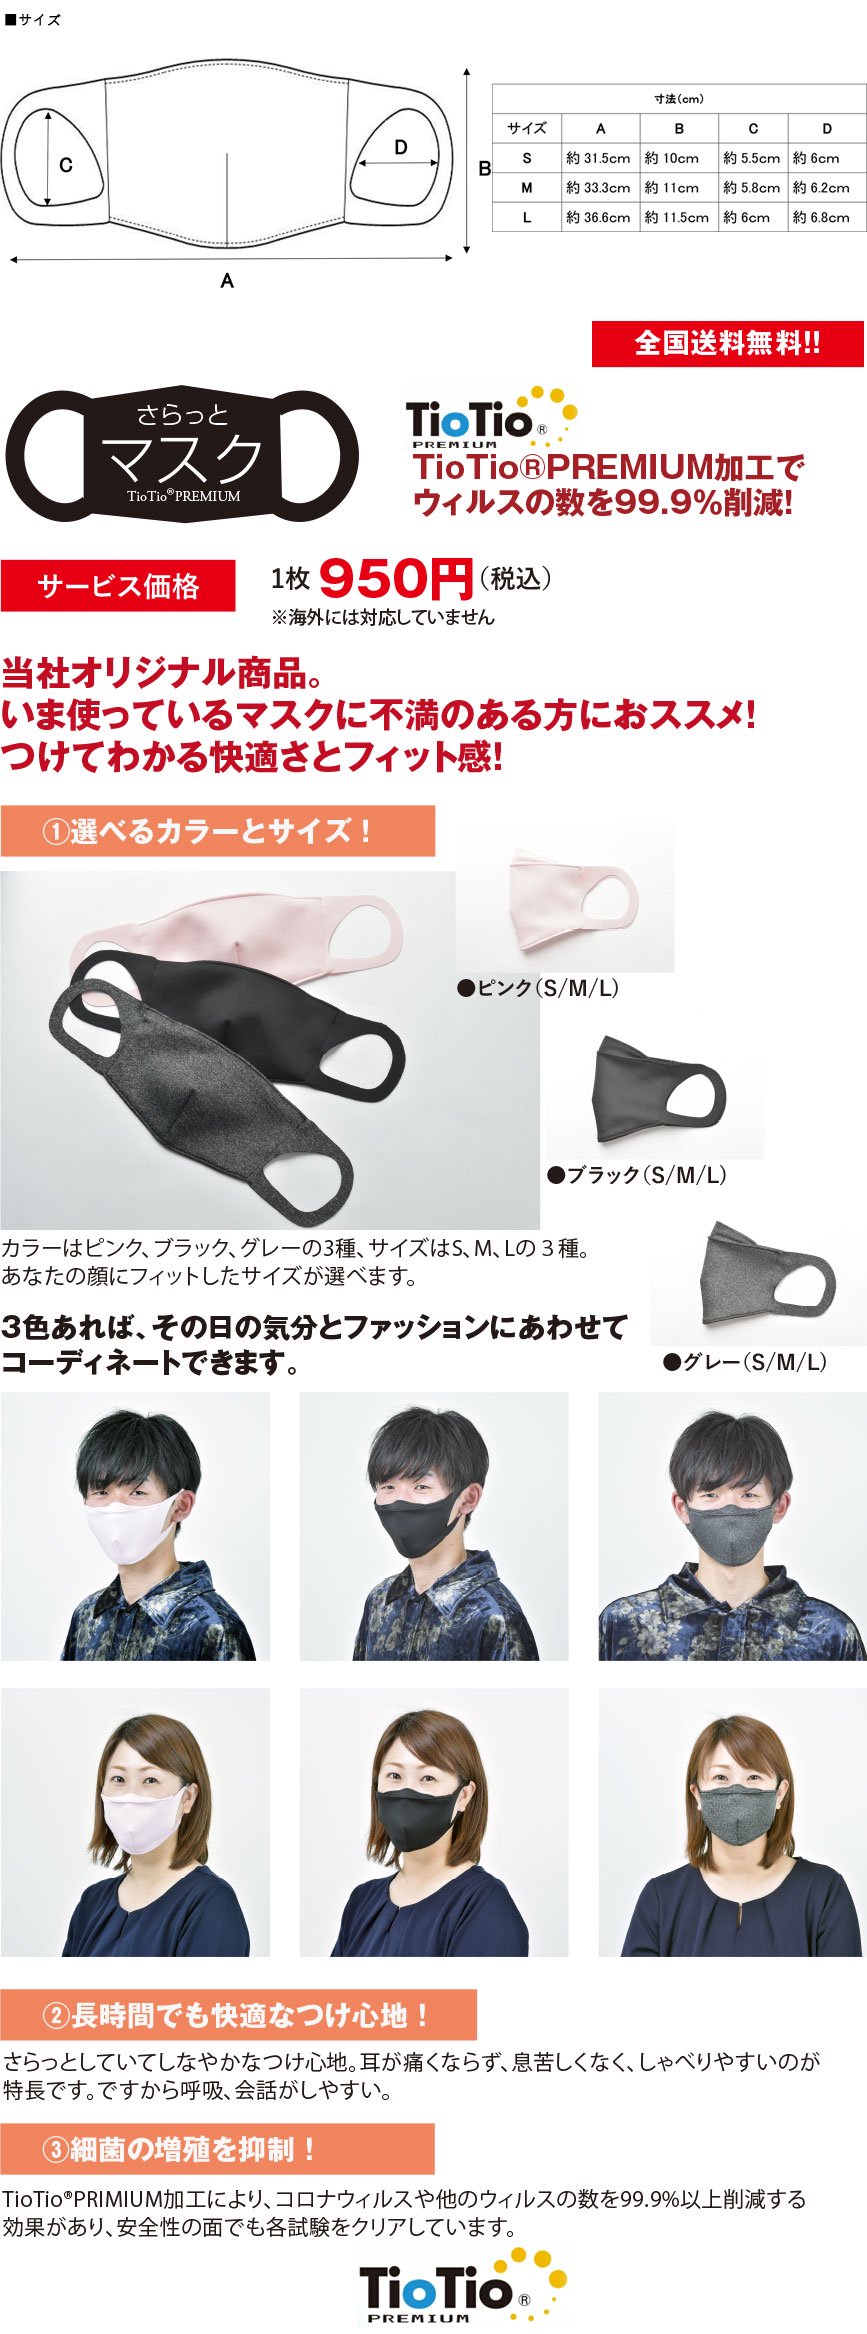 新型コロナ対策高機能マスク「さらっとマスク」ブラックは天然成分を原料としたTioTio;PRIMIUM加工(ハイブリット触媒)で、消臭・抗菌防カビ・防汚(花粉)・ホルムアルデヒト対策の機能を有した当社オリジナル日本製の新マスク。S・M・Lの3サイズあり、顔にフィットするものをお選びいただけます。繰り返し洗濯しても効果が長時間期待できる安心安全のマスクです。